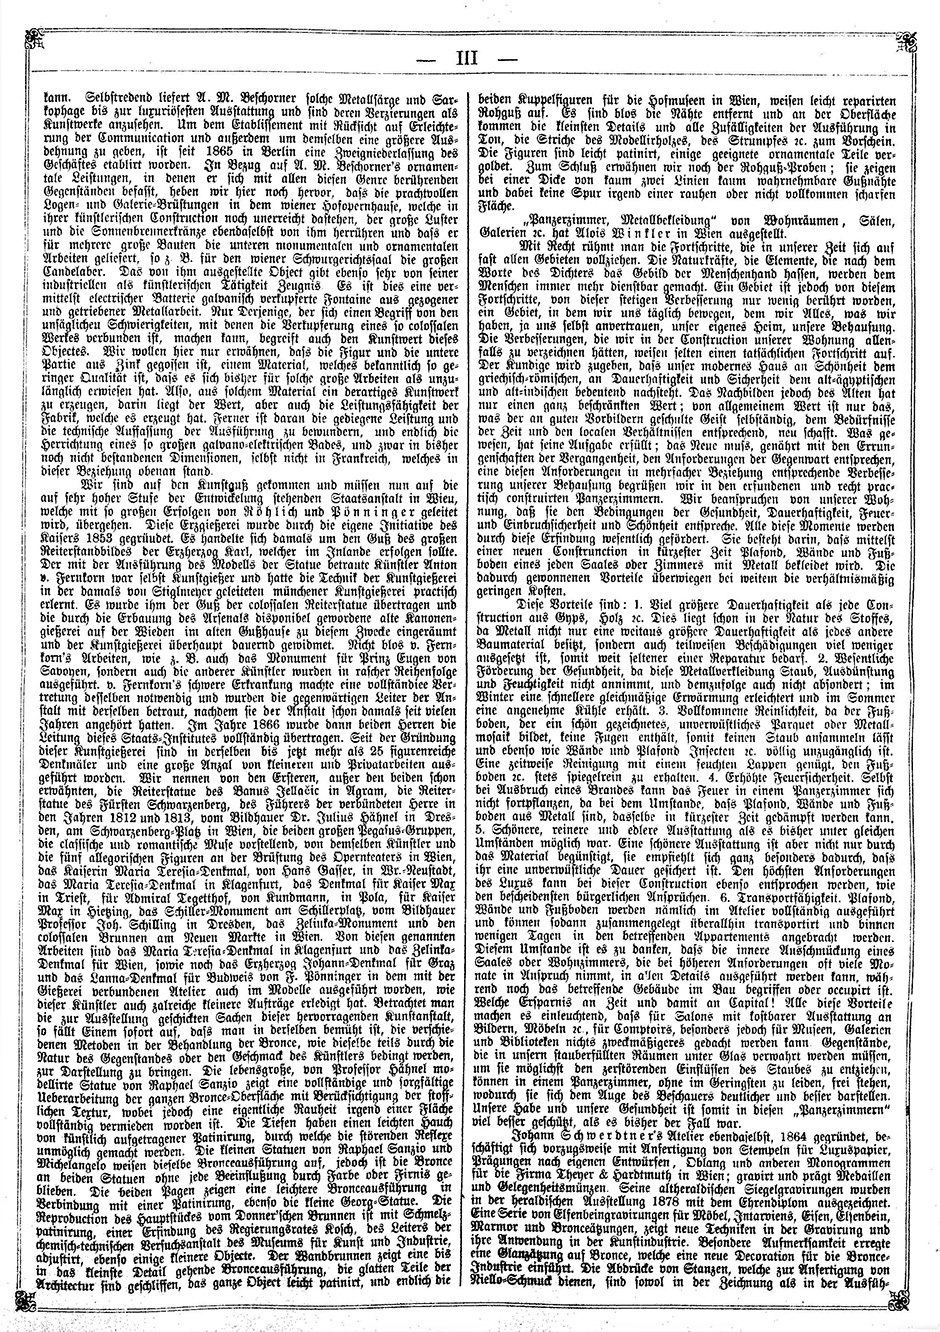 Archivbild 3: Beilage zur: "Österreichischen Gartenlaube" vom 19.9.1878